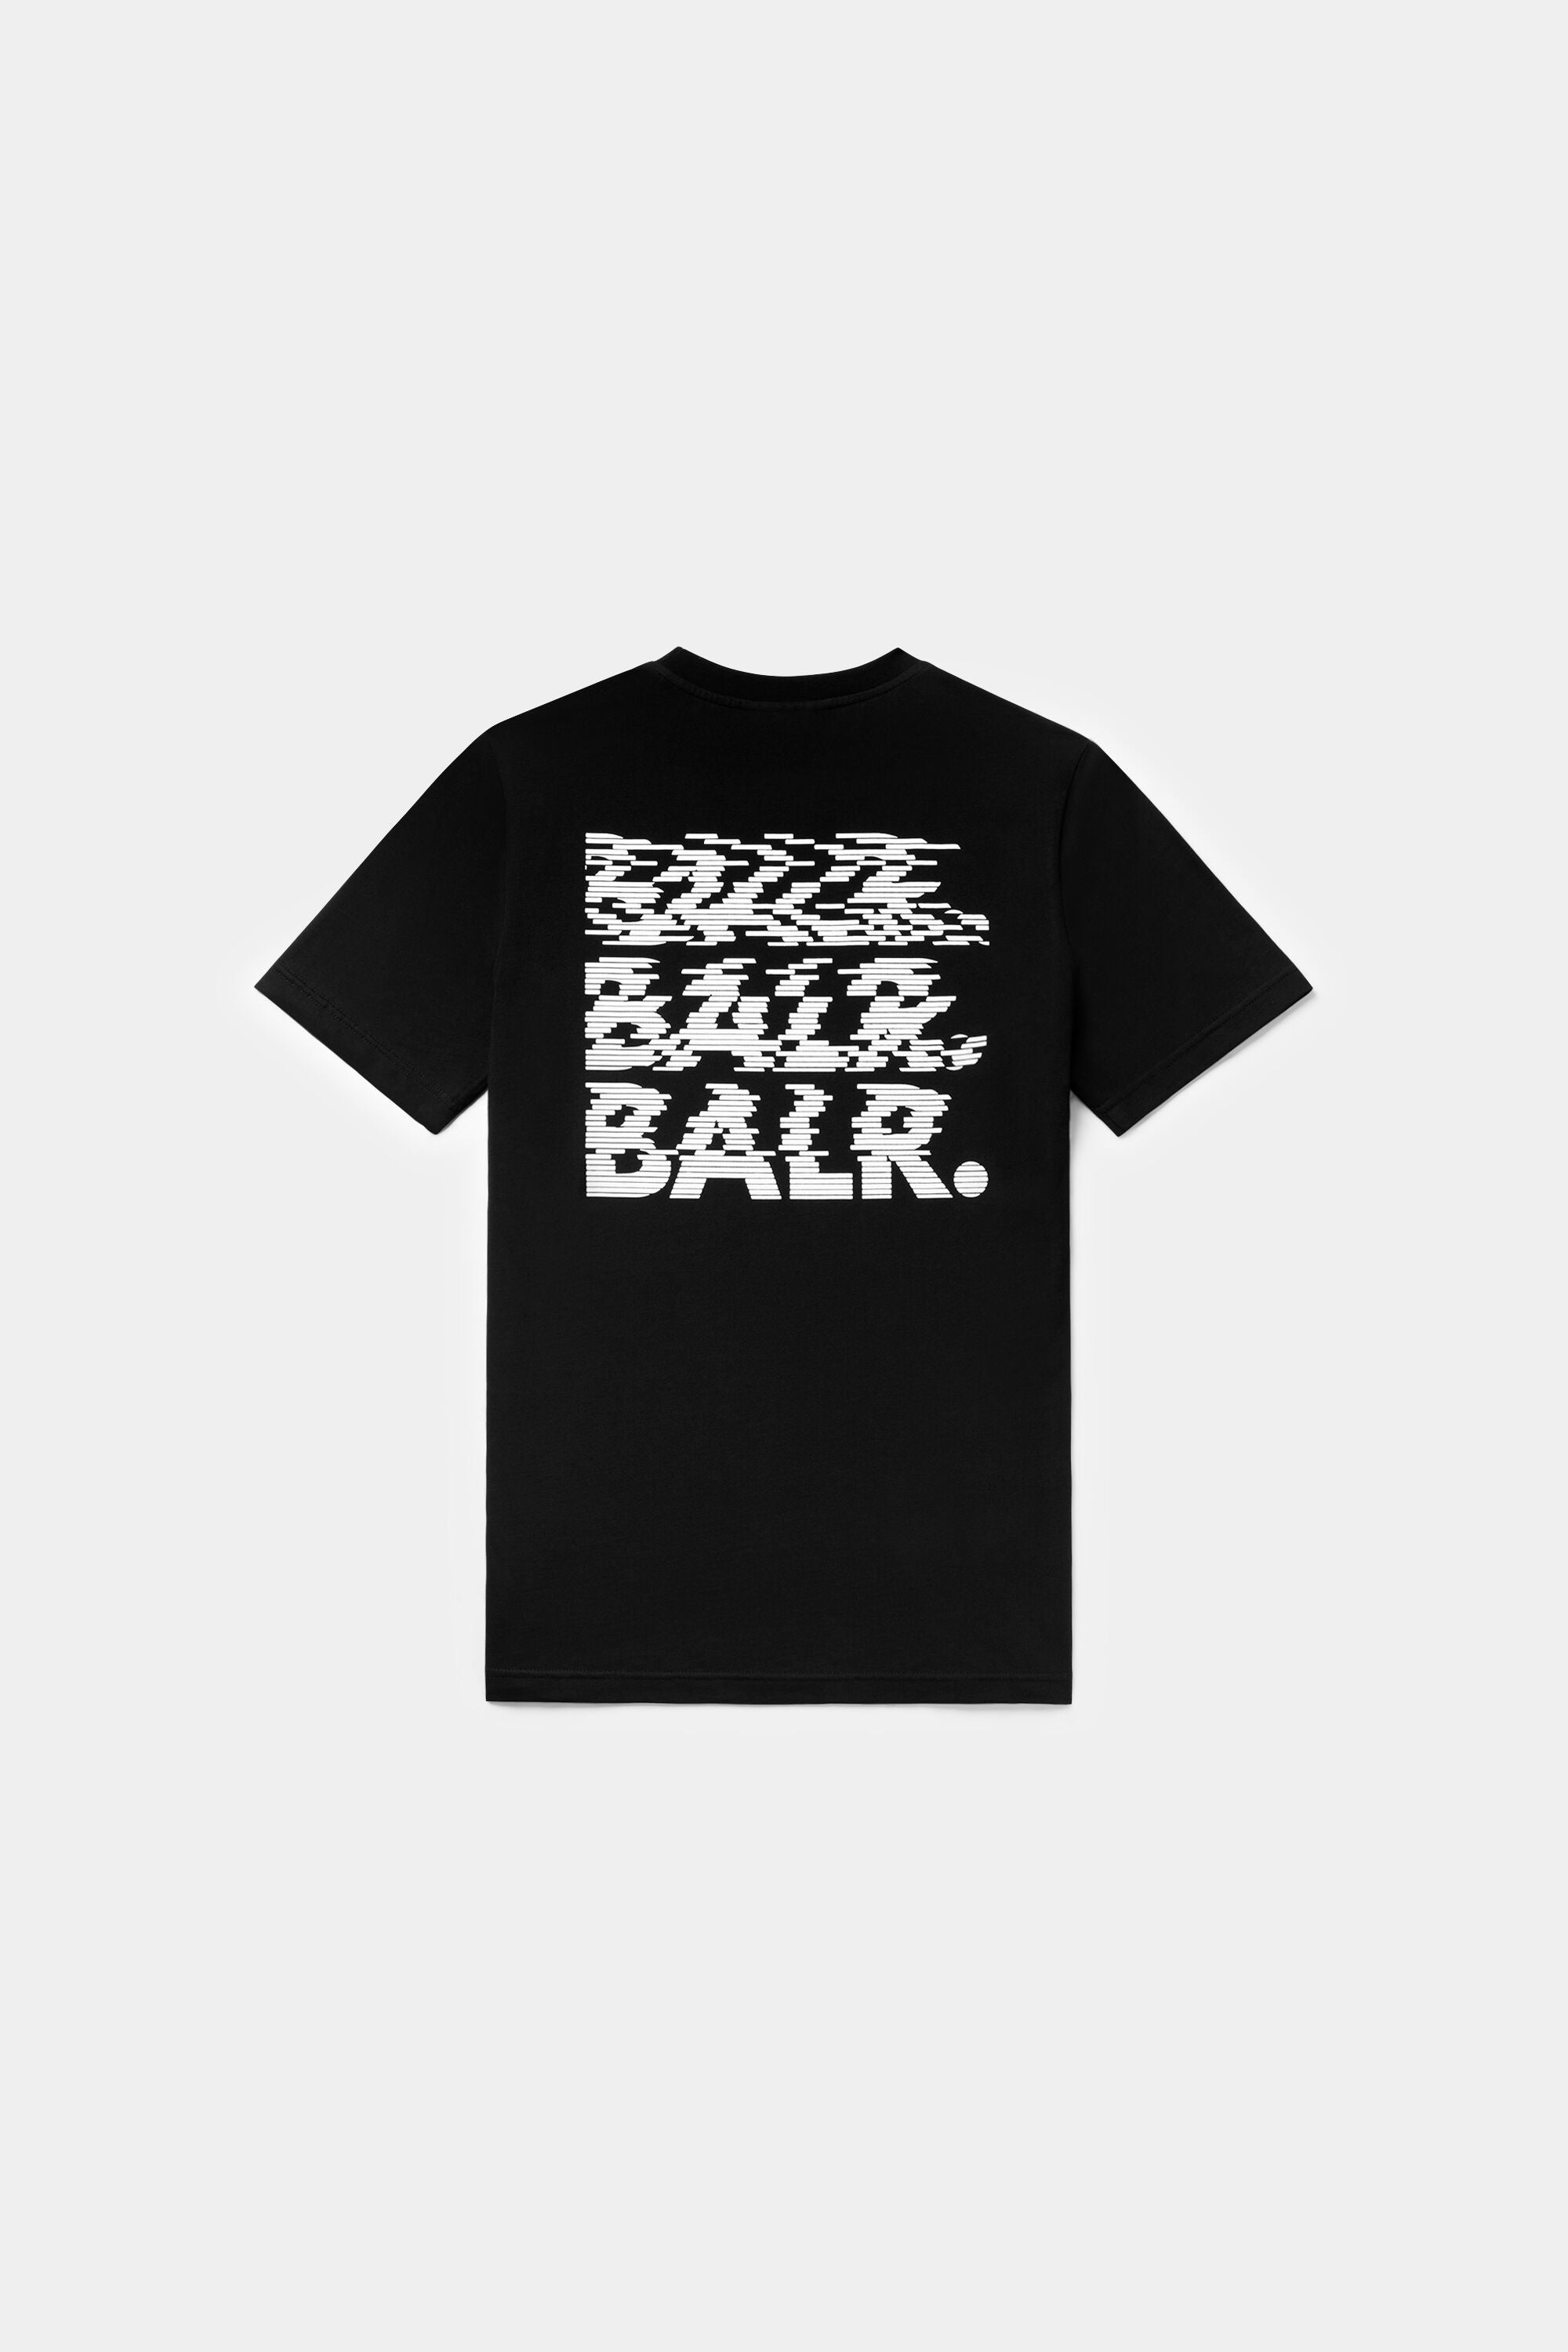 BALR. Glitch Regular Fit T-Shirt Jet Black